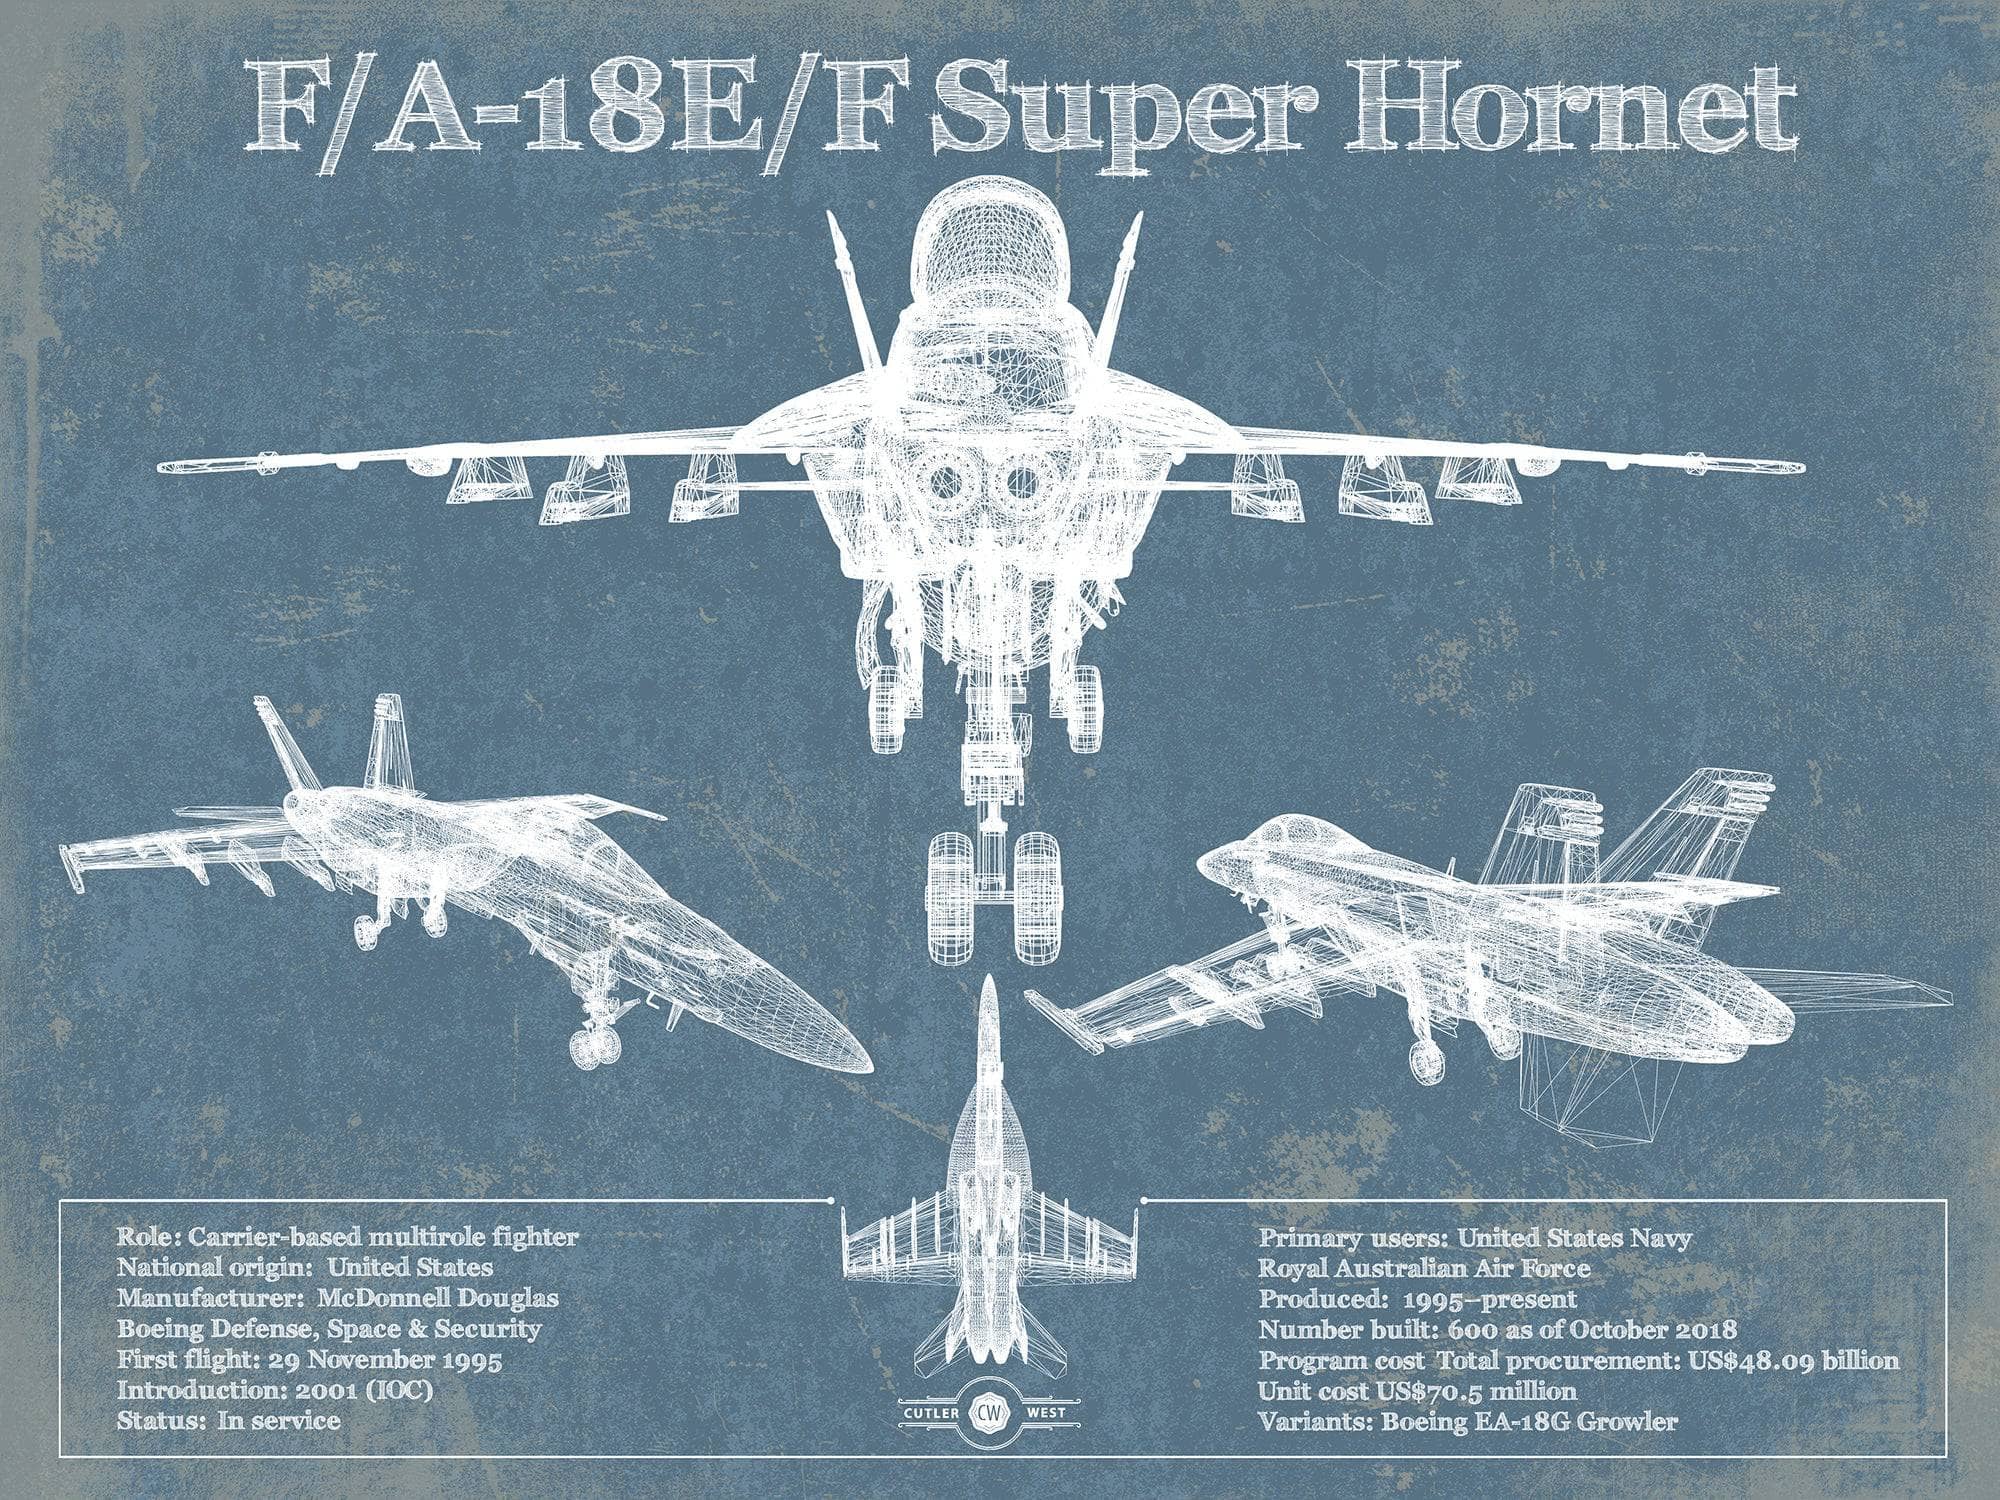 Cutler West Military Aircraft 14" x 11" / Unframed F/A-18F Super Hornet Patent Blueprint Original Military Wall Art 794460857-TOP